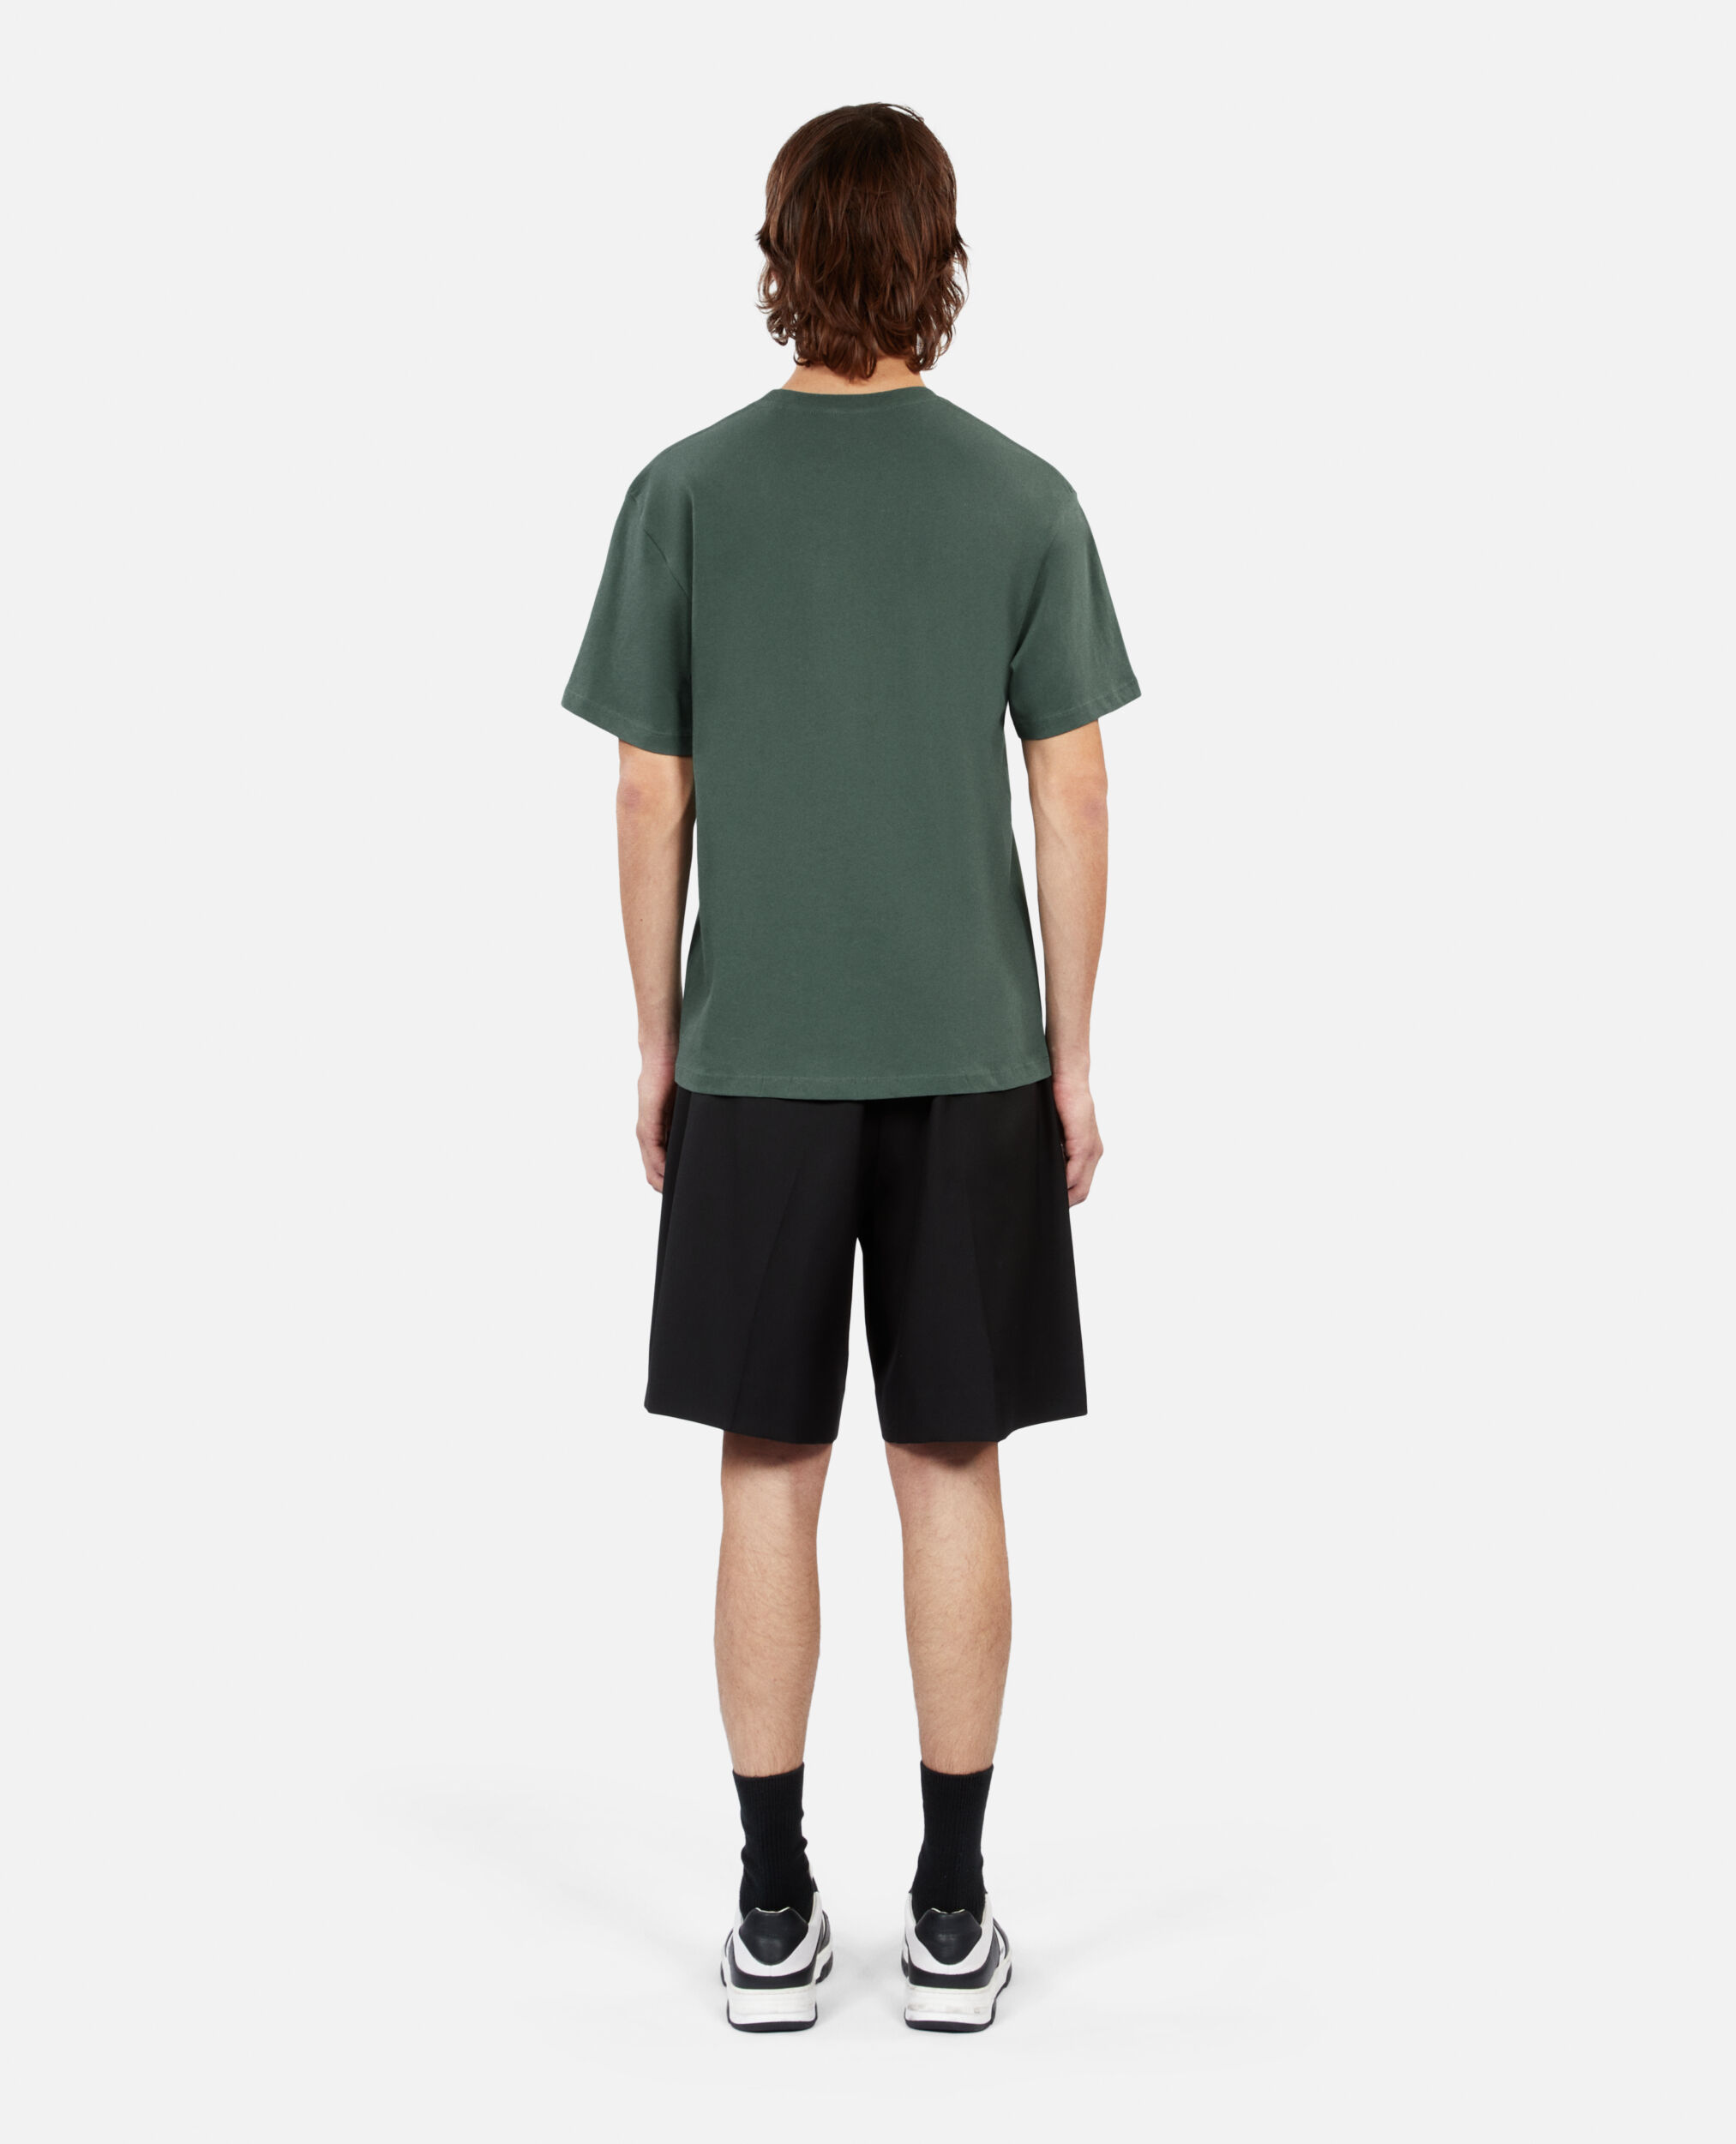 Grünes T-Shirt mit Siebdruck für Herren, FOREST, hi-res image number null